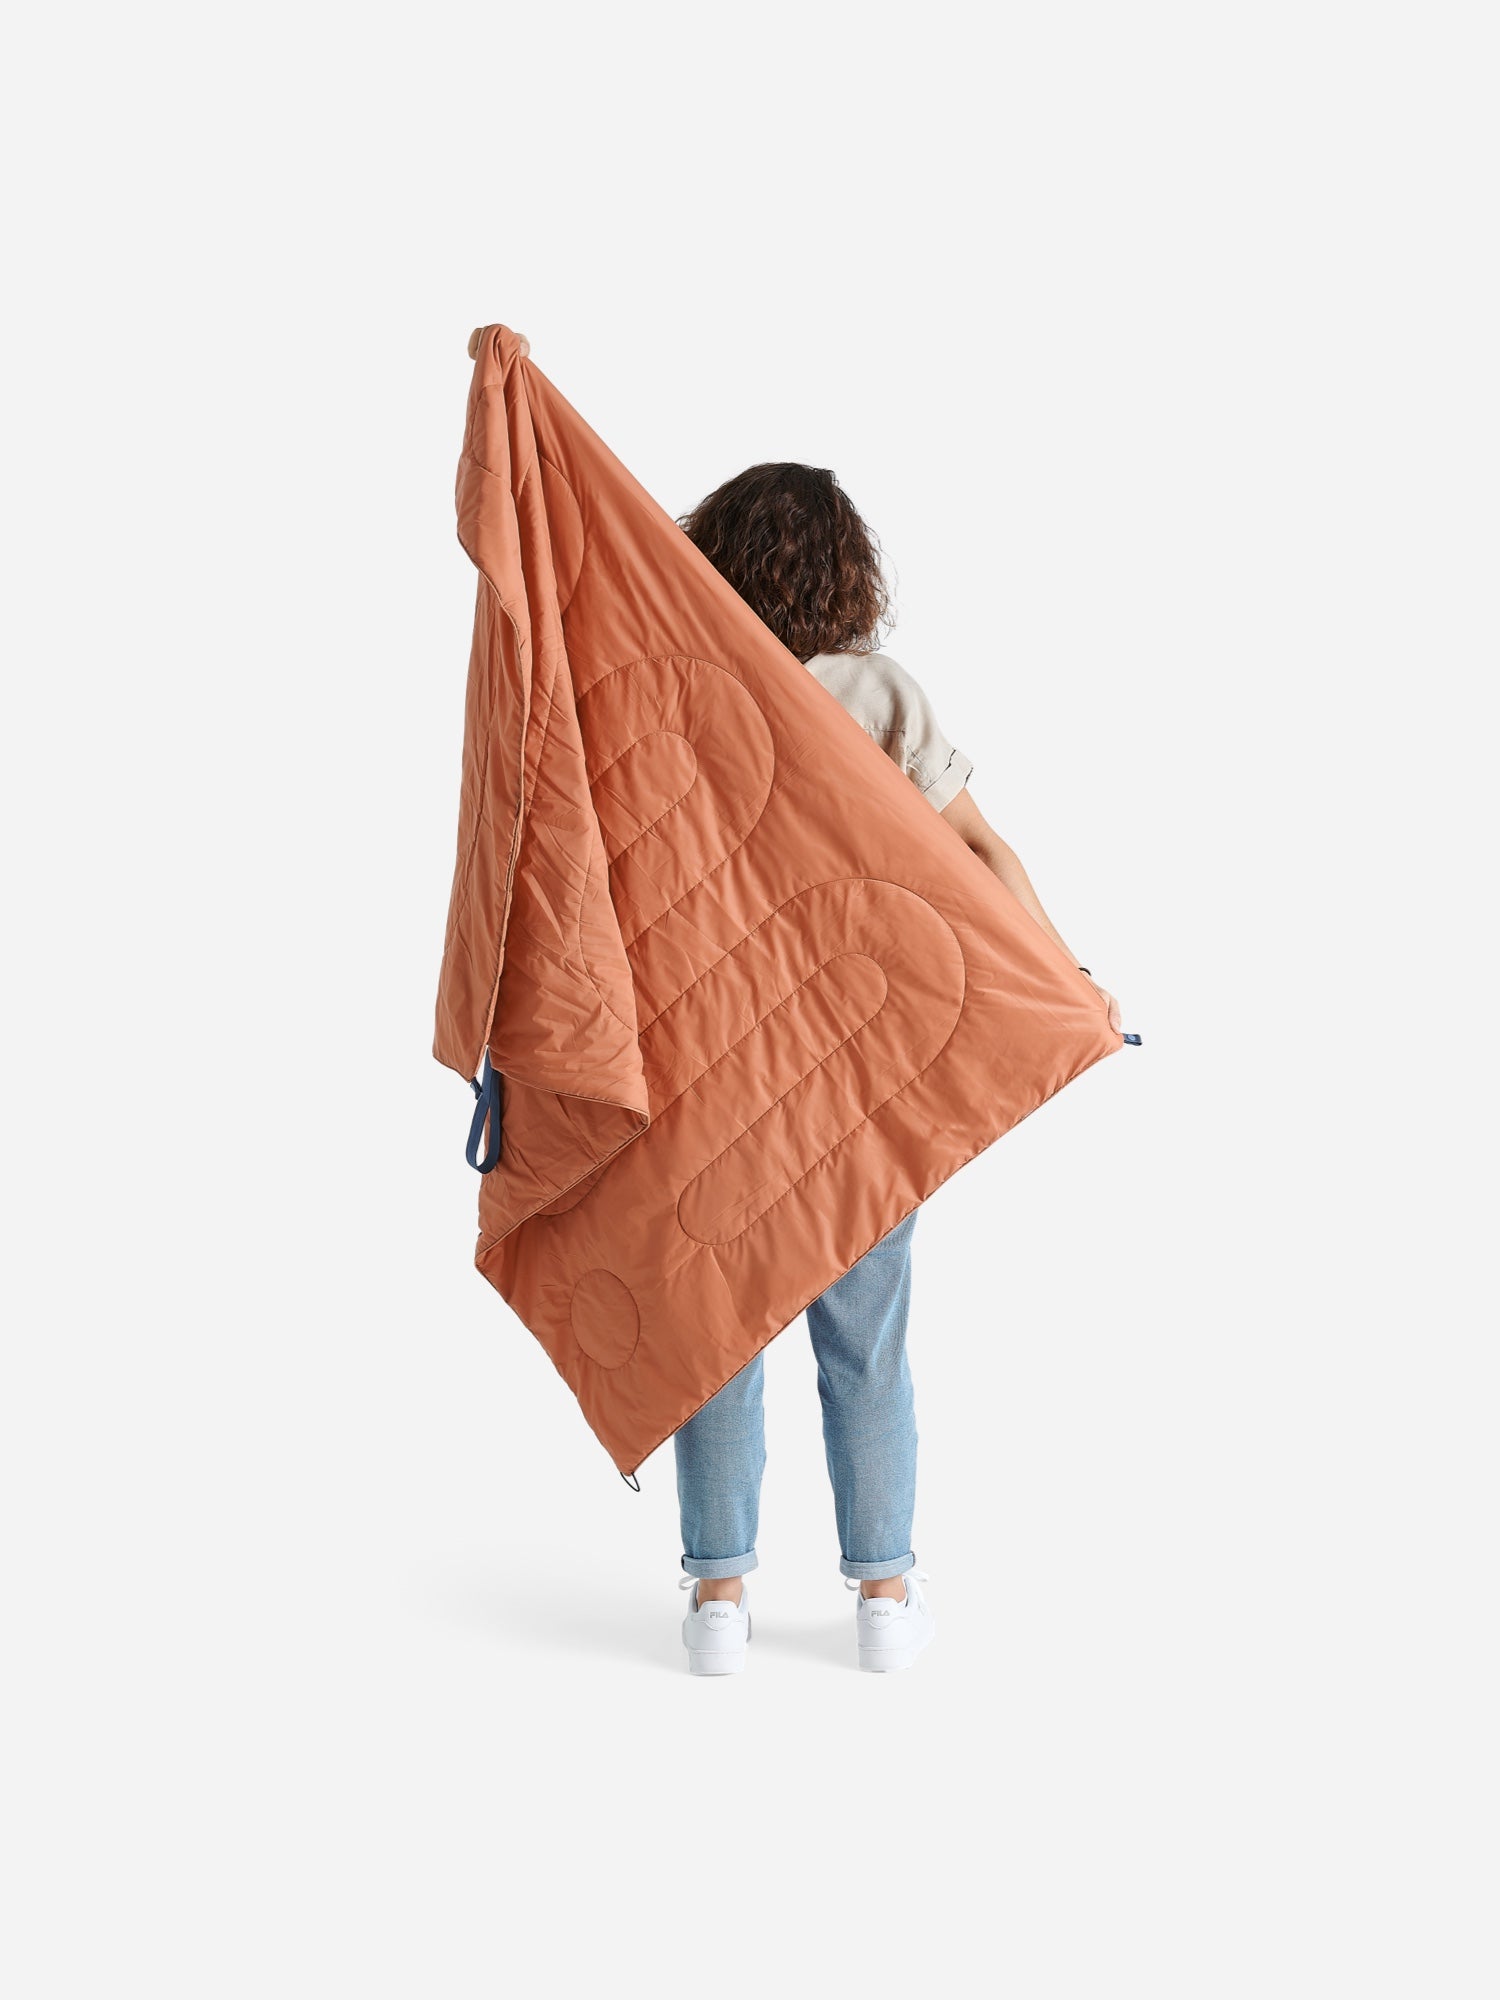 Packable Blanket